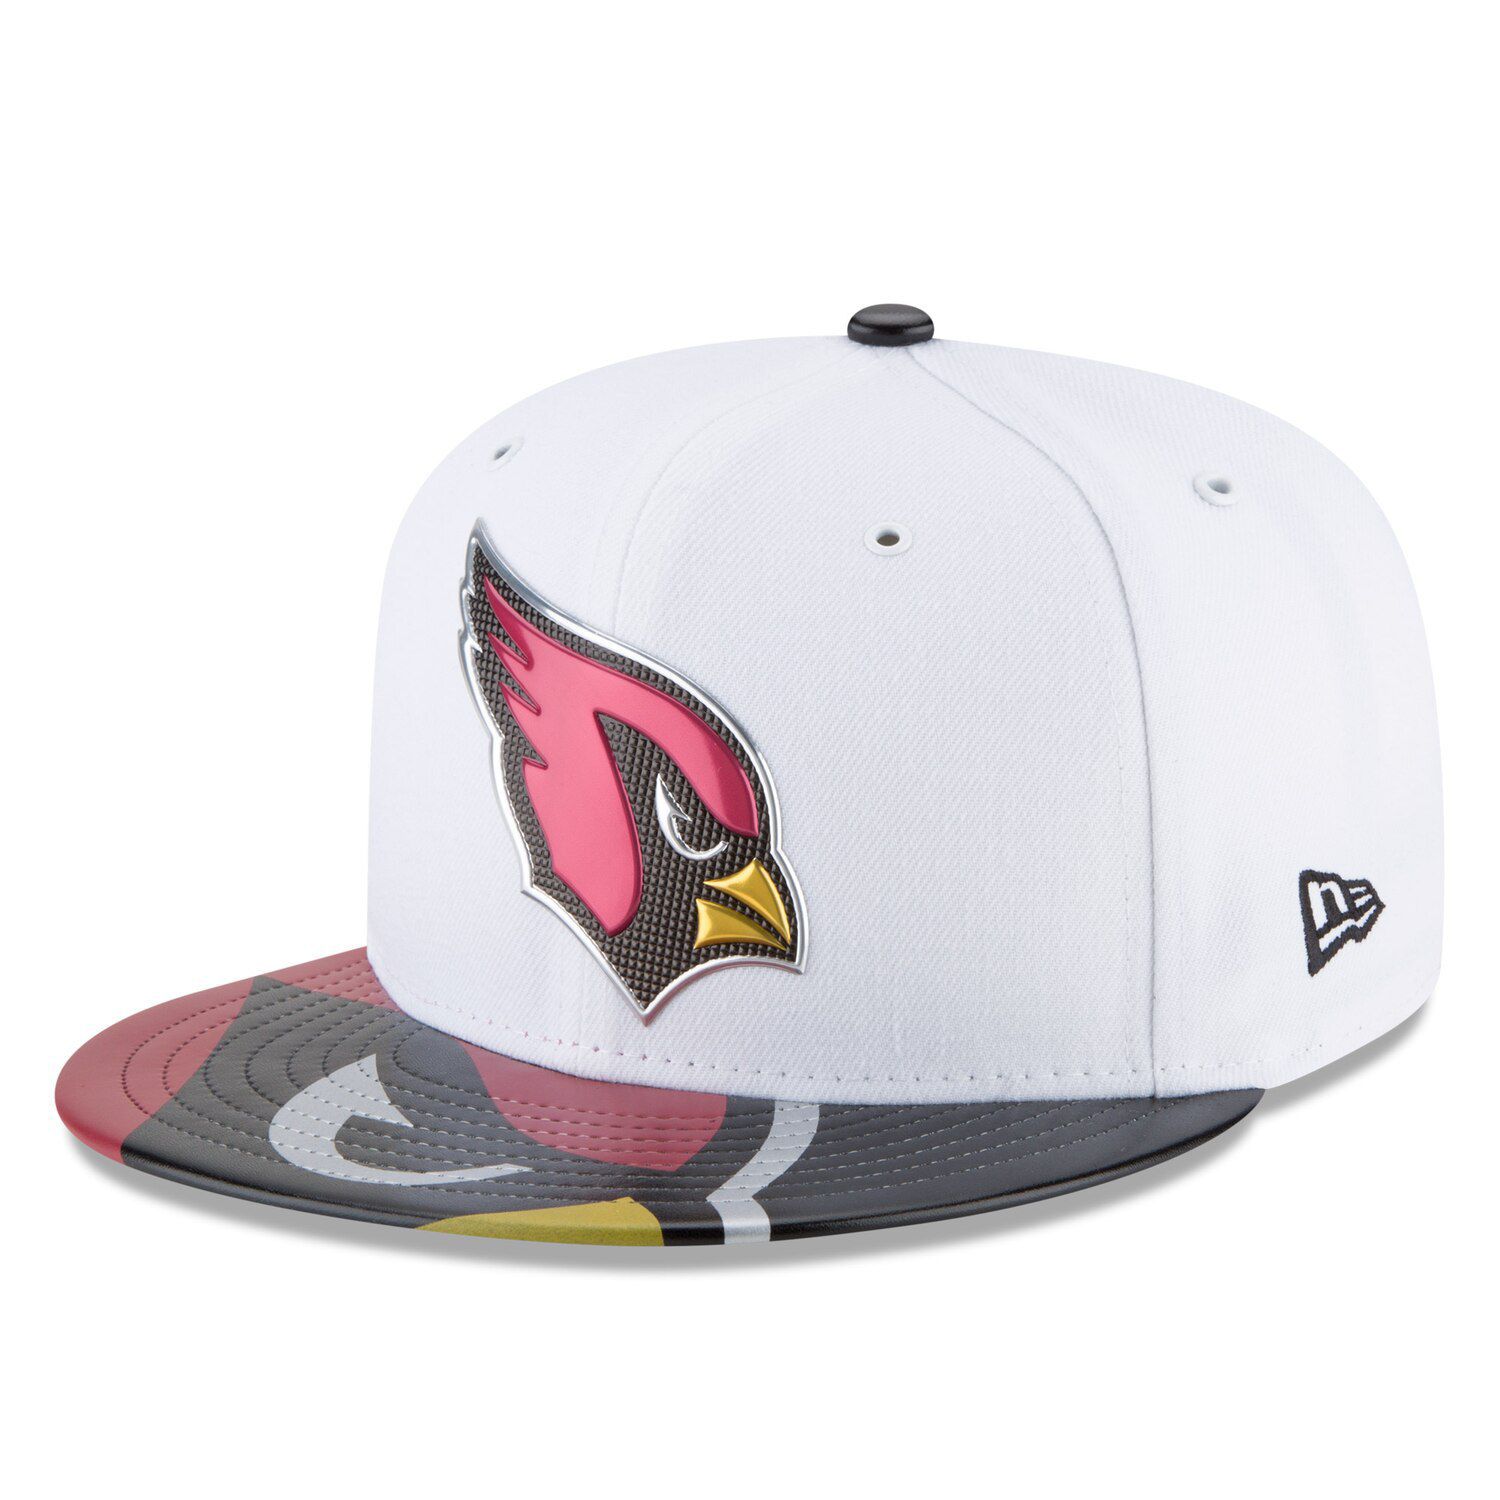 white arizona cardinals hat